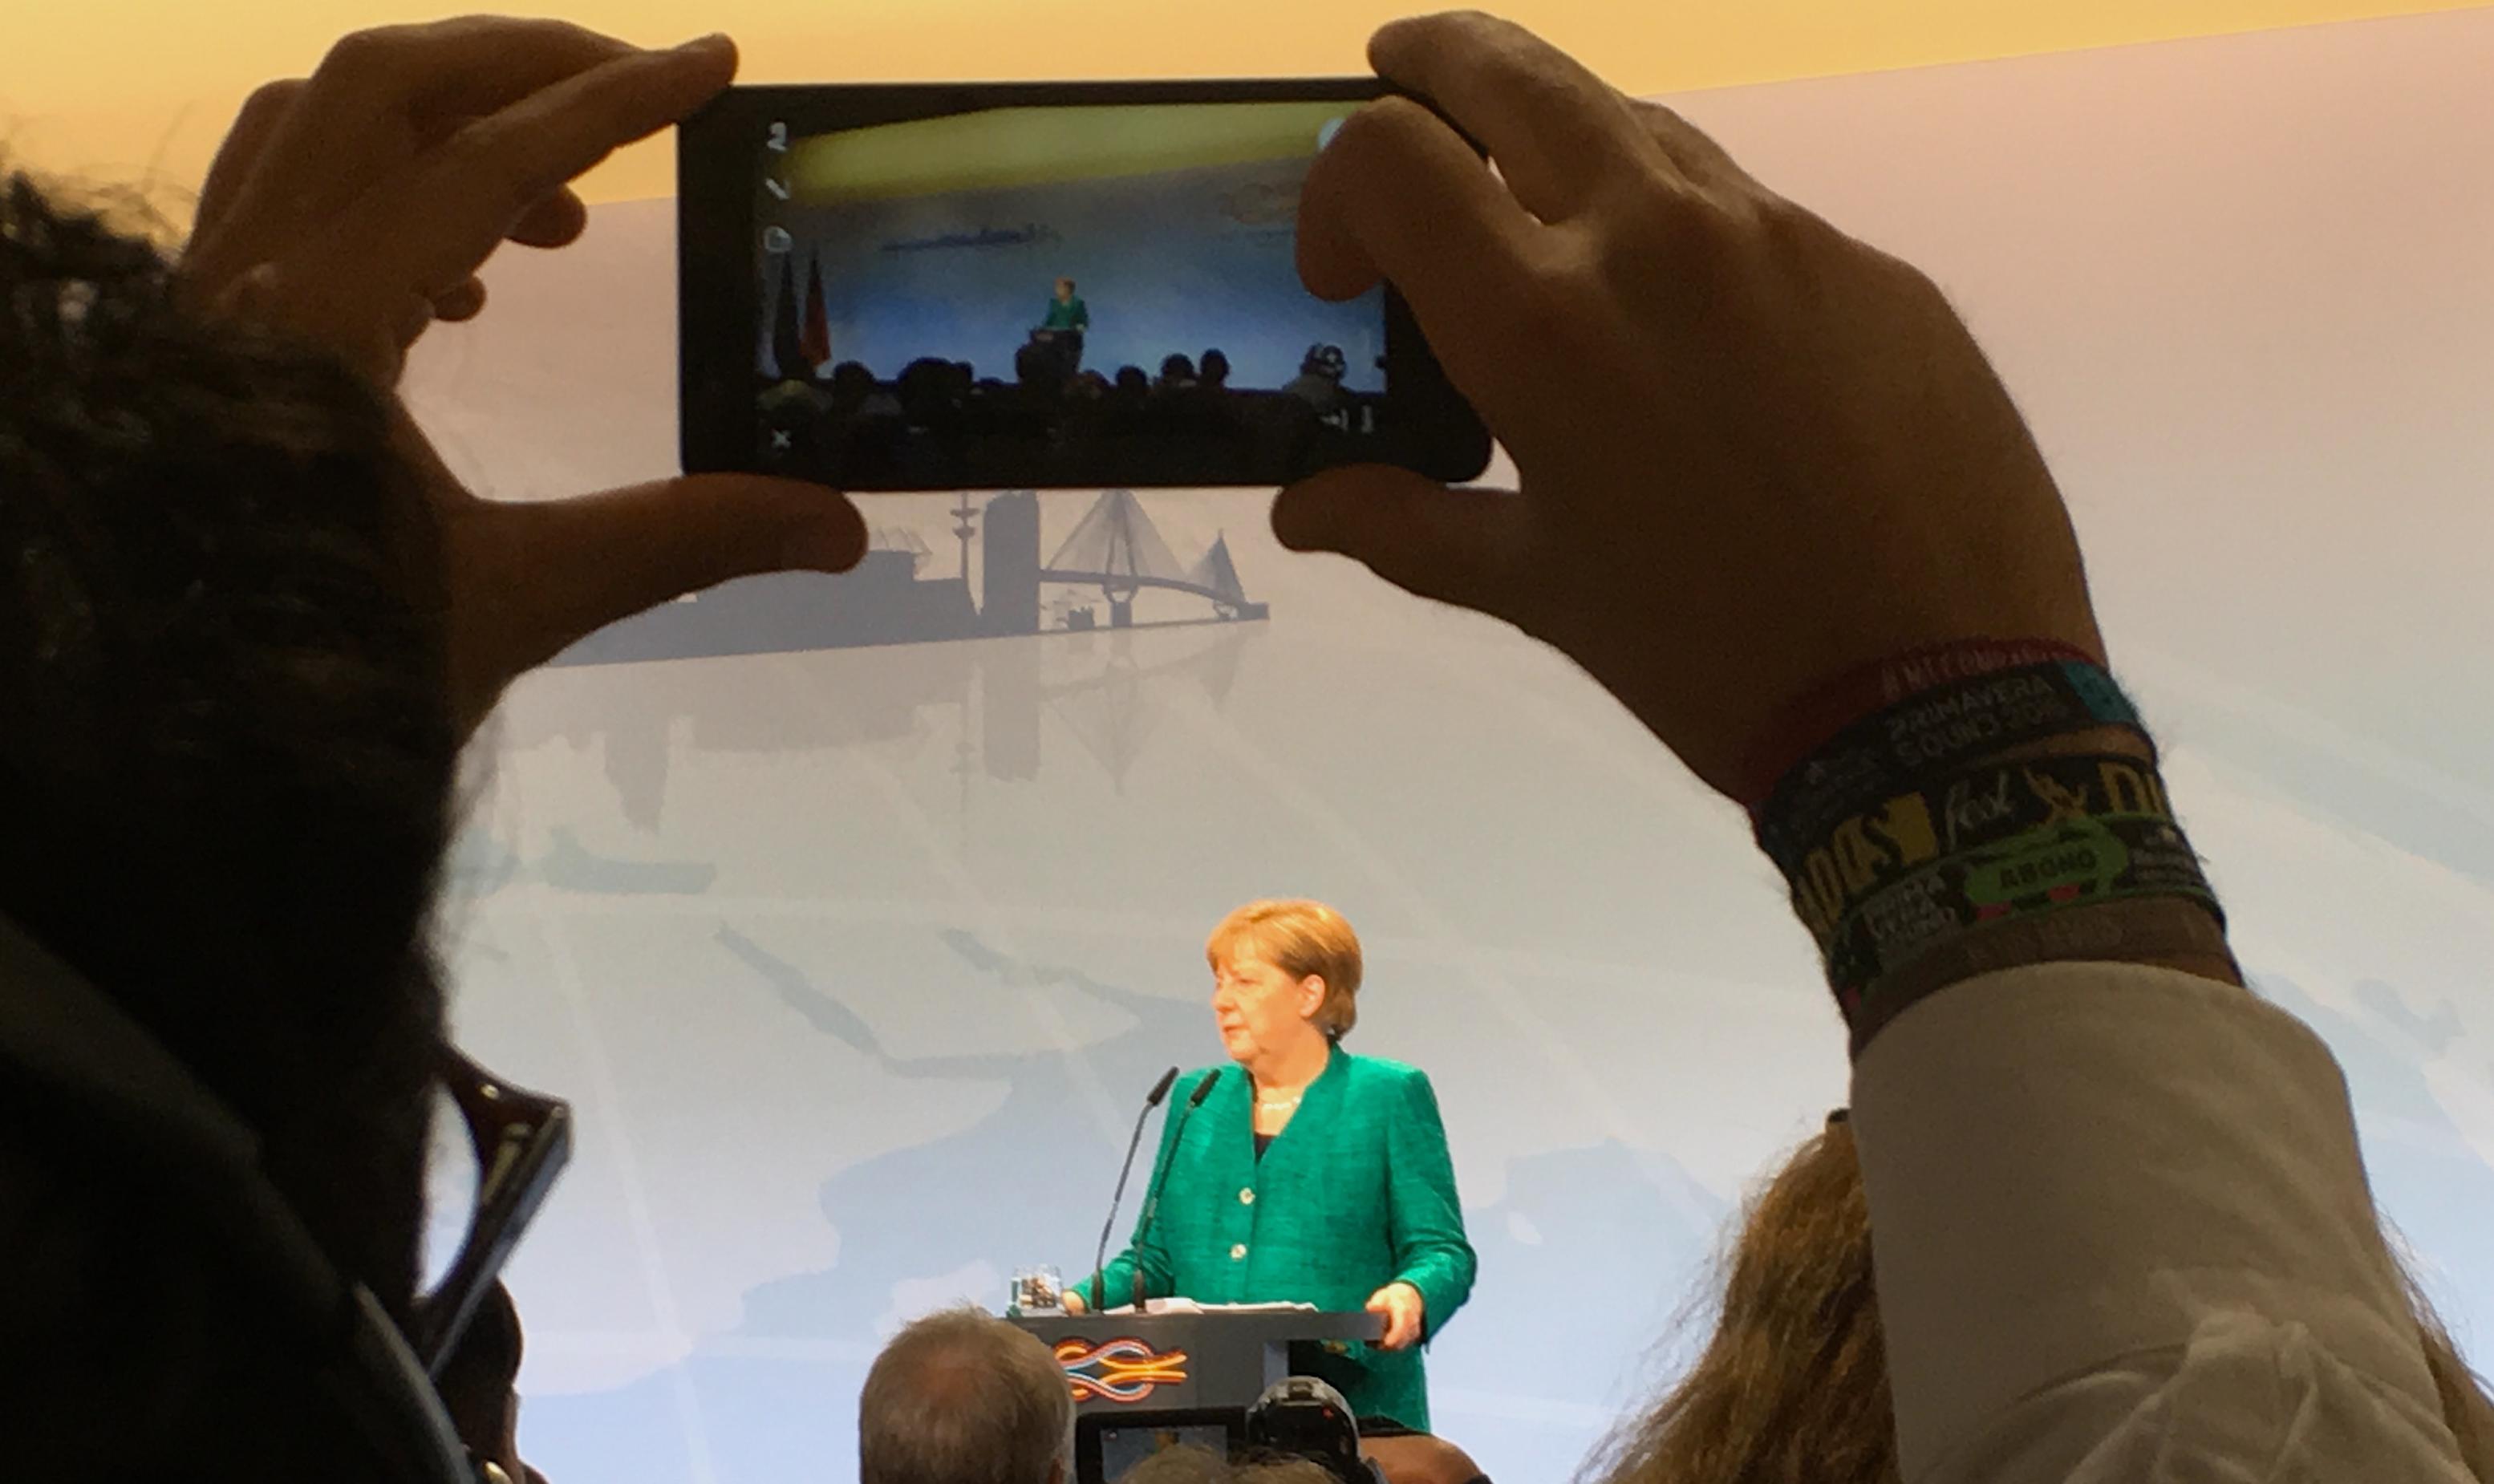 Das Bild zeigt Bundeskanzlerin Angela Merkel auf dem Podium und am Mikrophon bei der Pressekonferenz zur Verkündigung der Ergebnisse des G20-Gipfels in Hamburg. Es ist aus einer hinteren Reihe fotografiert, zwischen den Armen eines anderen Journalisten hindurch, der Merkel gerade mit seinem Smartphone aufnimmt. Man sieht die CDU-Poltikerin noch einmal auf dem Bildschirm des Geräts.